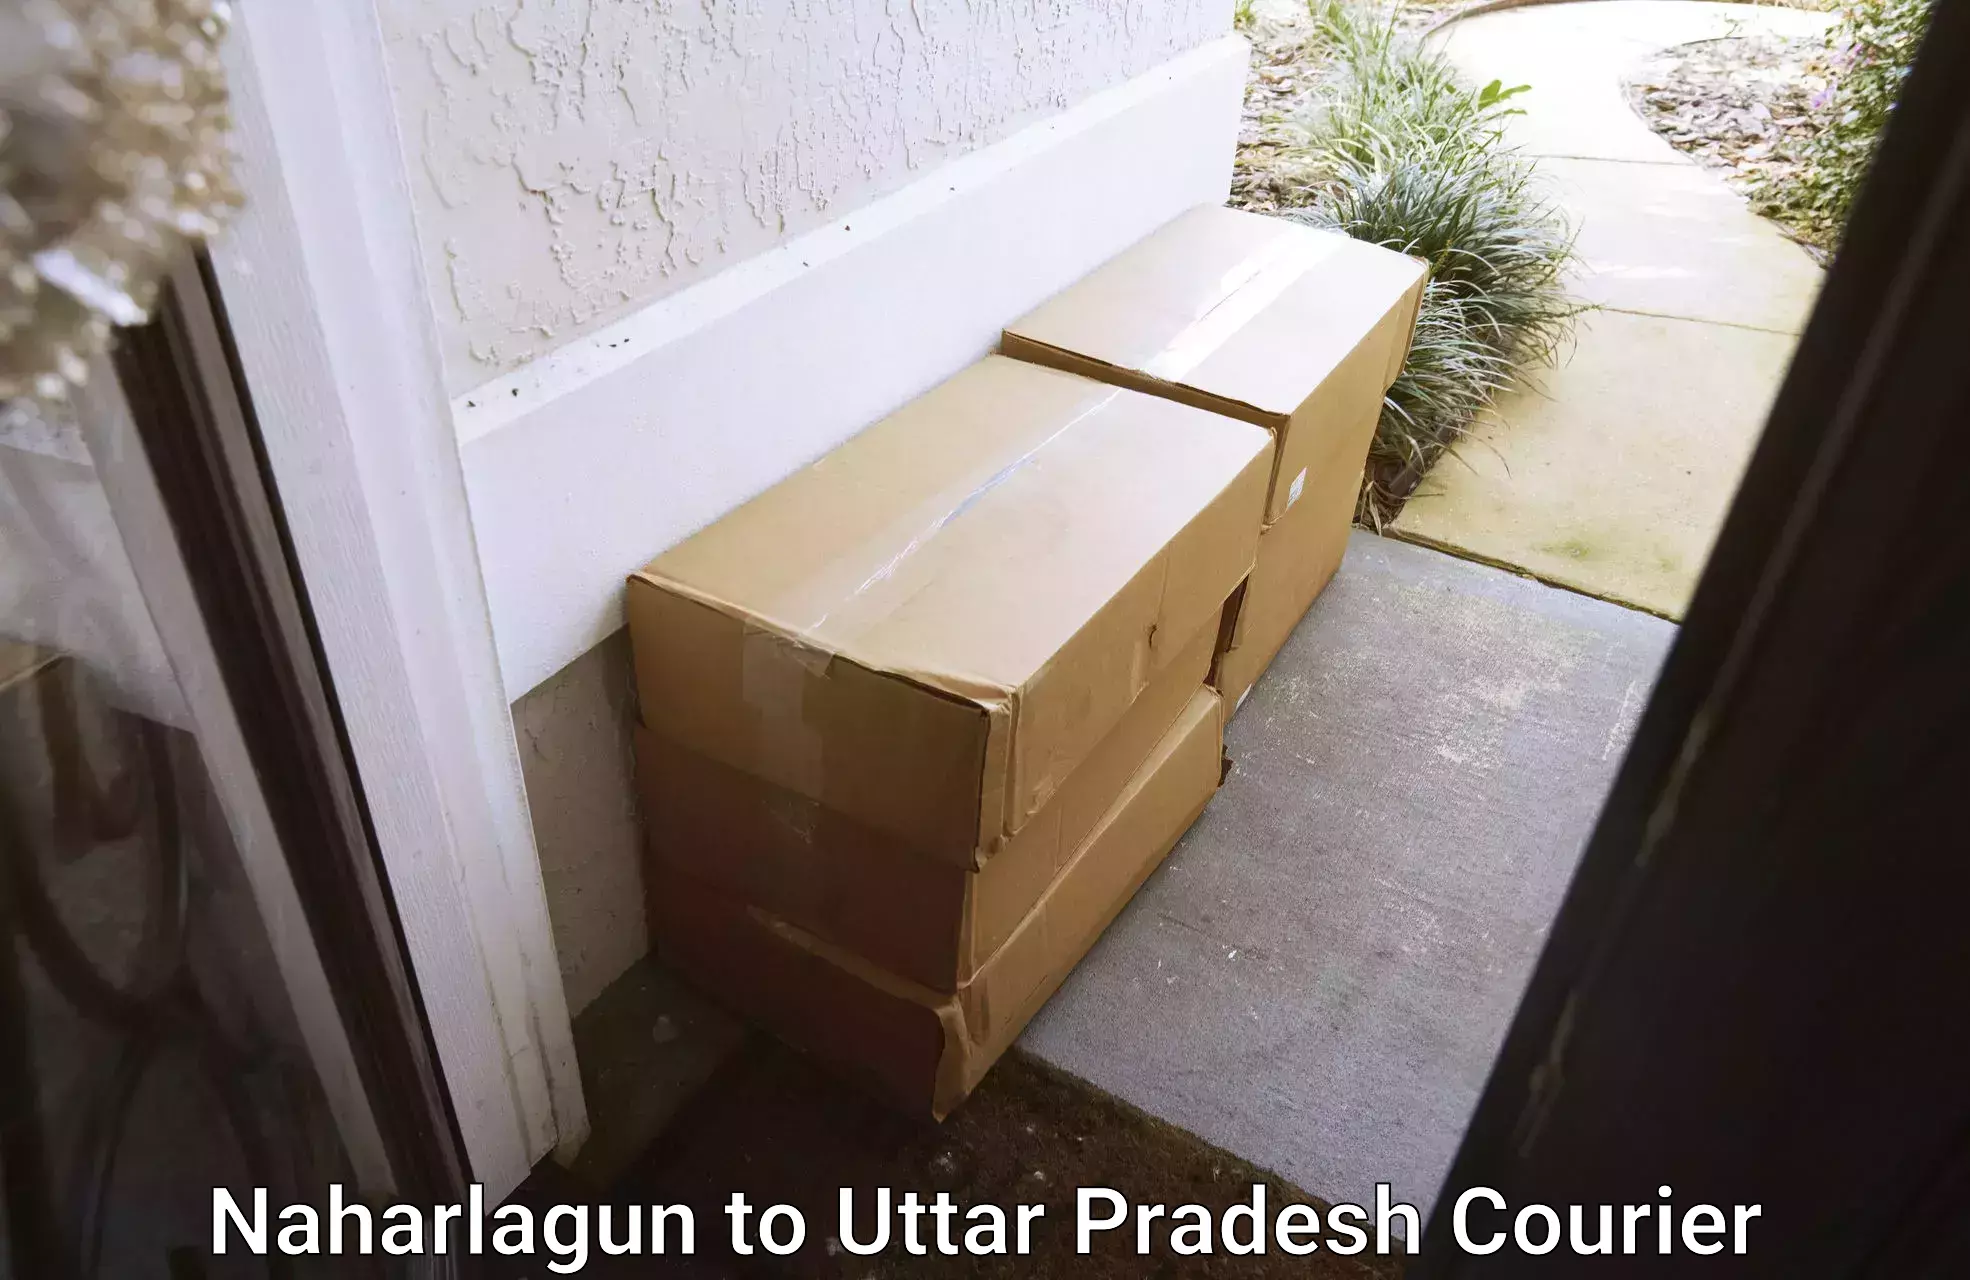 Professional parcel services Naharlagun to Khair